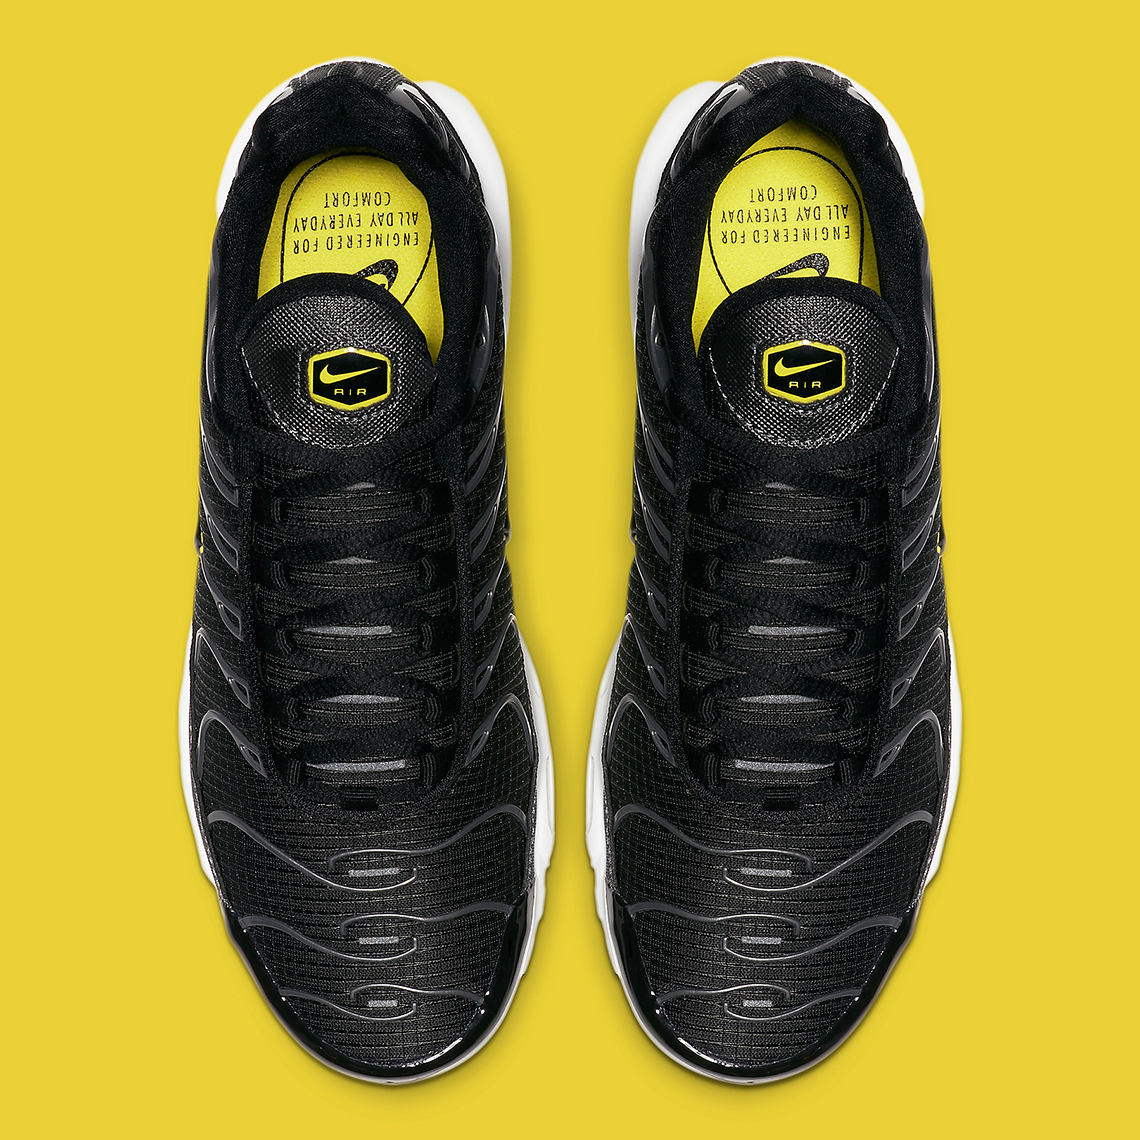 Nike Air Max Plus Black Yellow Cn0142 001 2